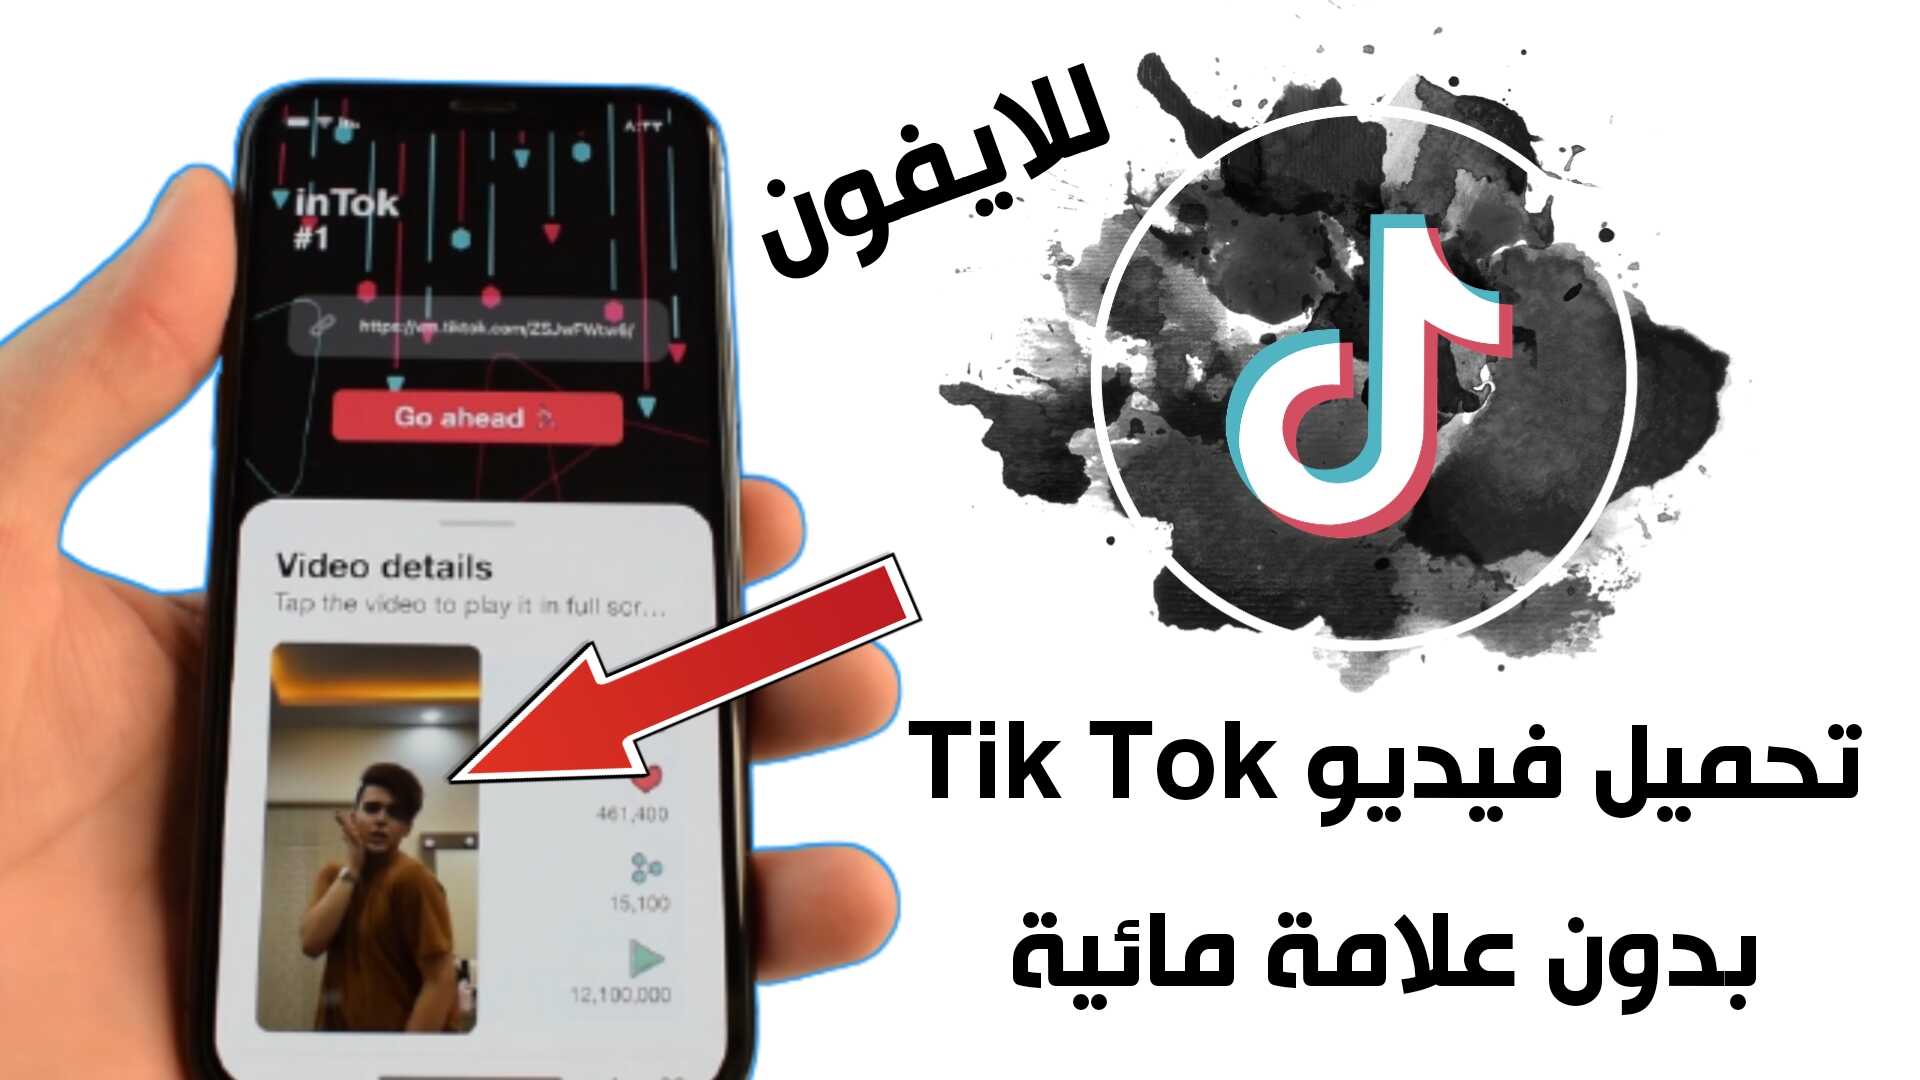 تحميل فيديو Tik Tok للايفون بدون علامة مائية وبدون حقوق